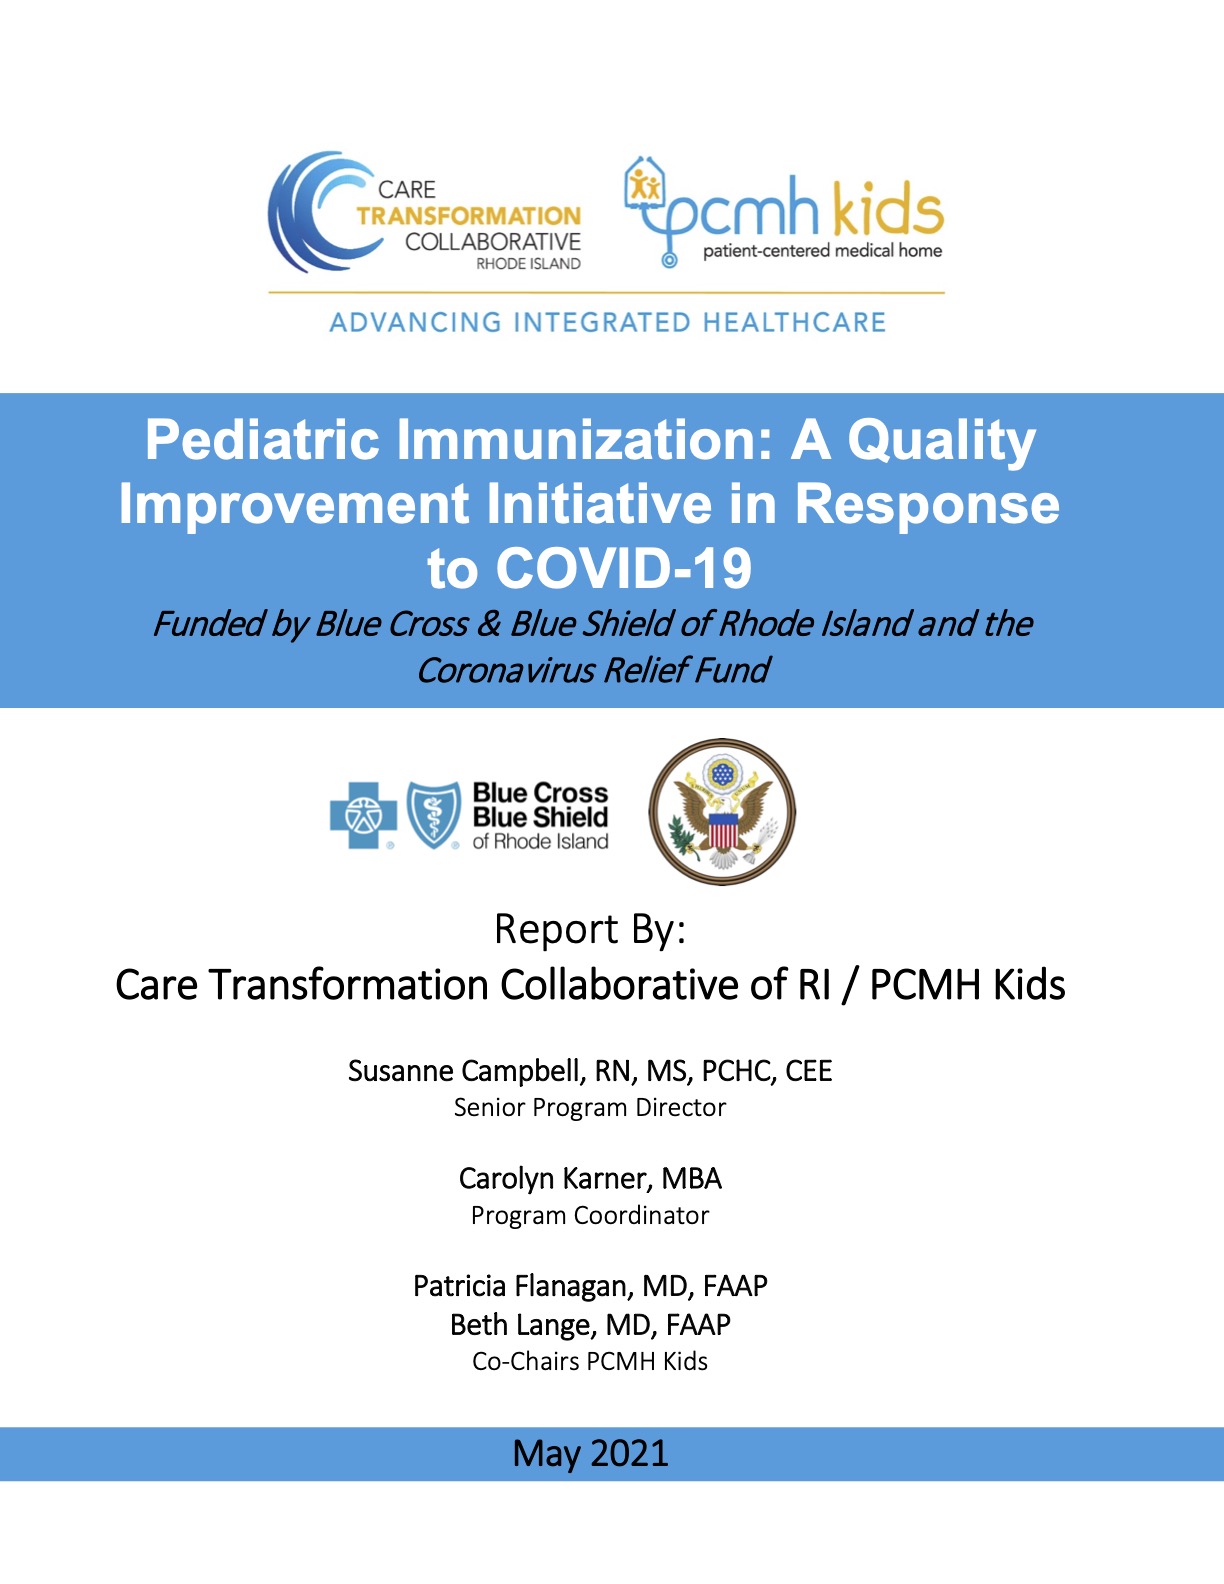 Pediatric Immunization: A Quality Improvement Initiative in Response to COVID-19